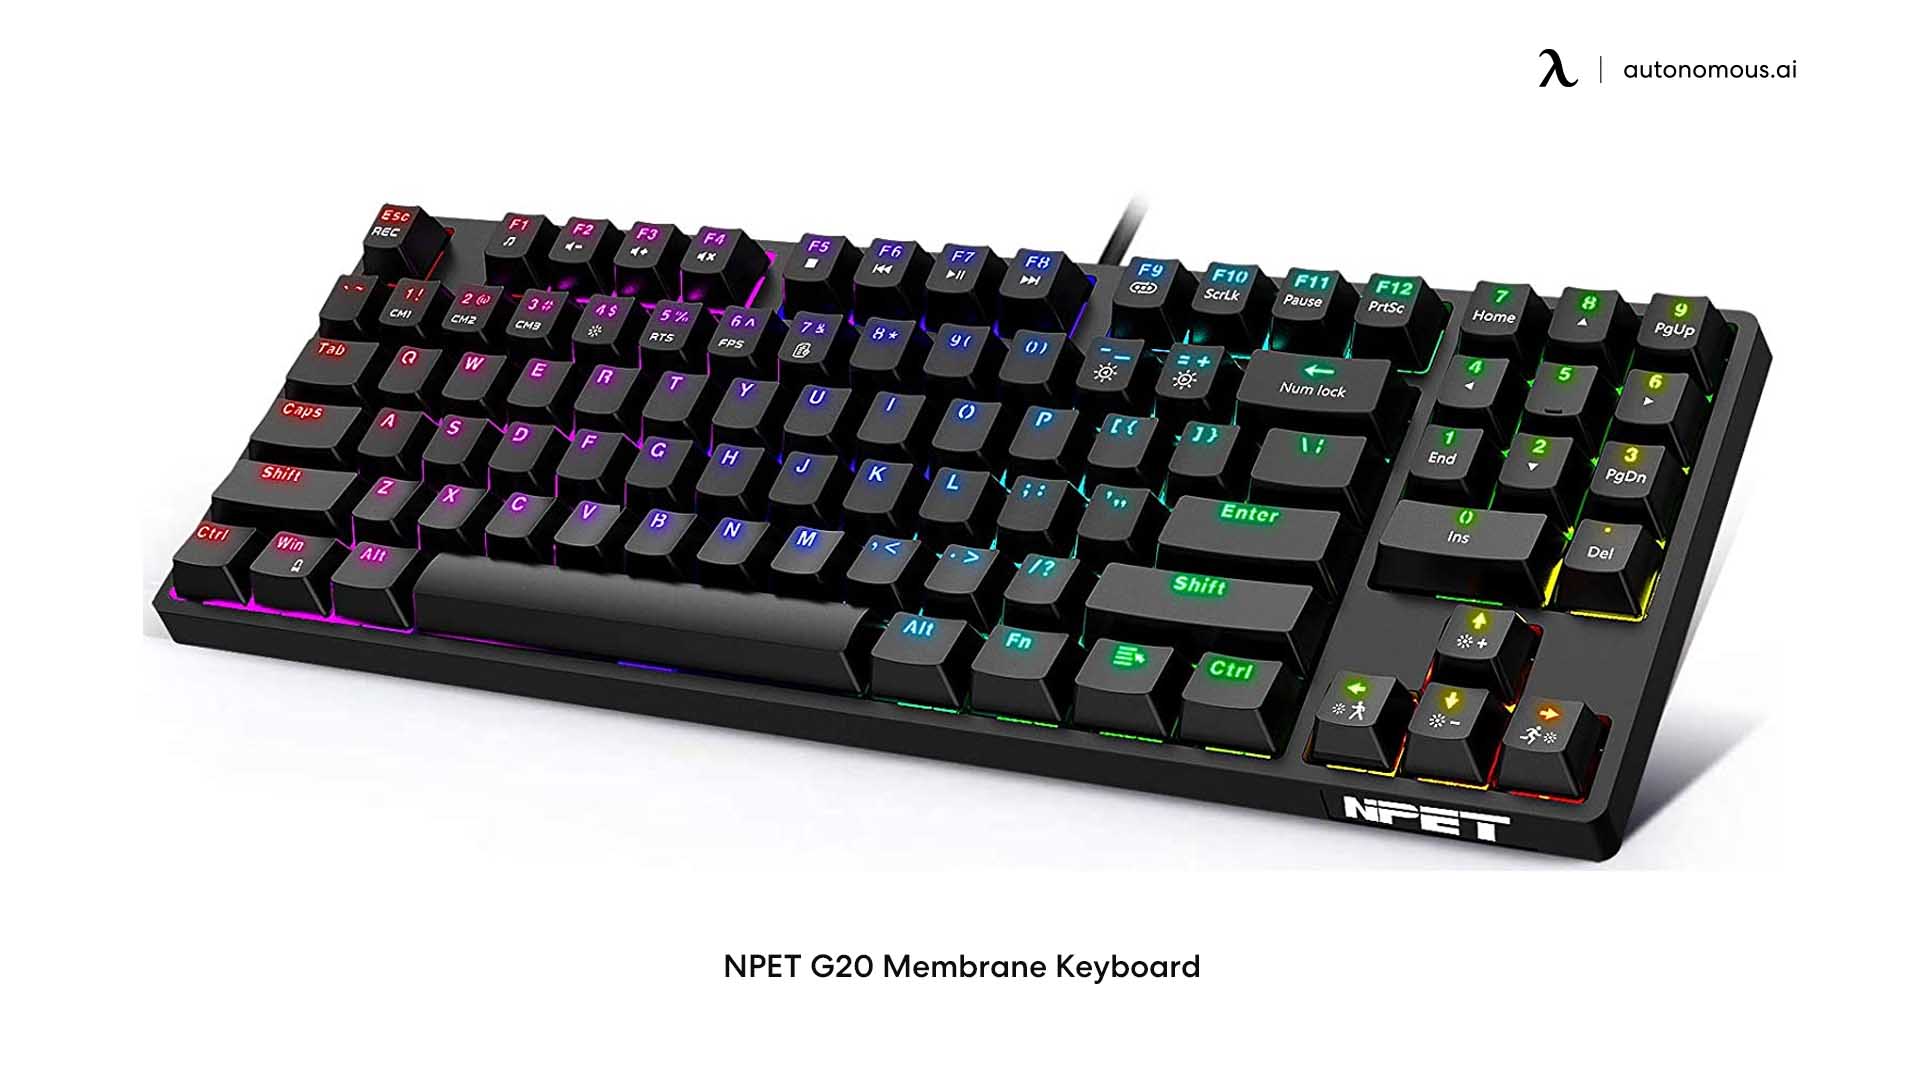 NPET G20 Membrane Keyboard